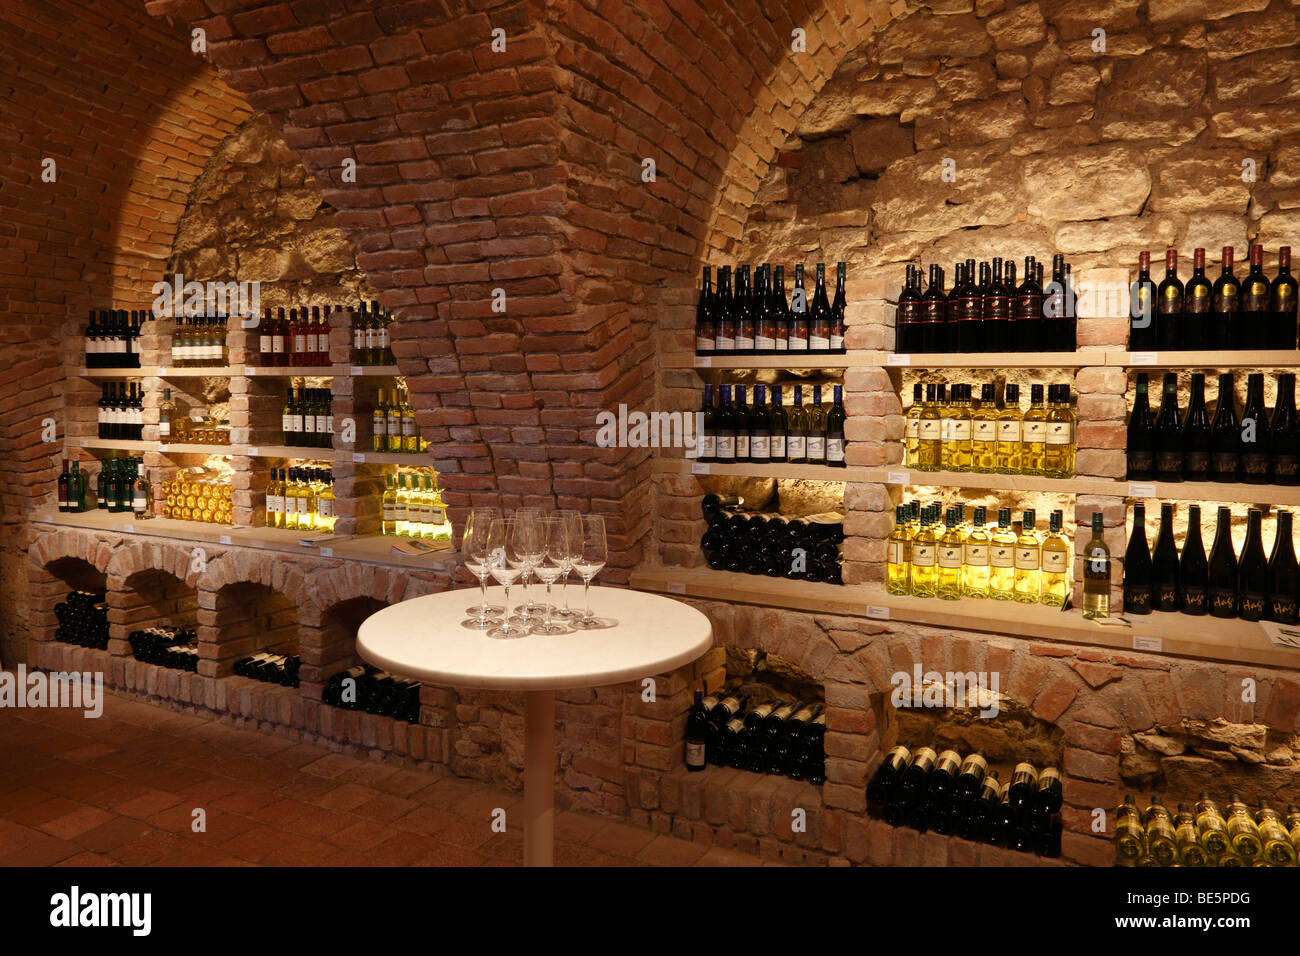 Cantina vino immagini e fotografie stock ad alta risoluzione - Alamy